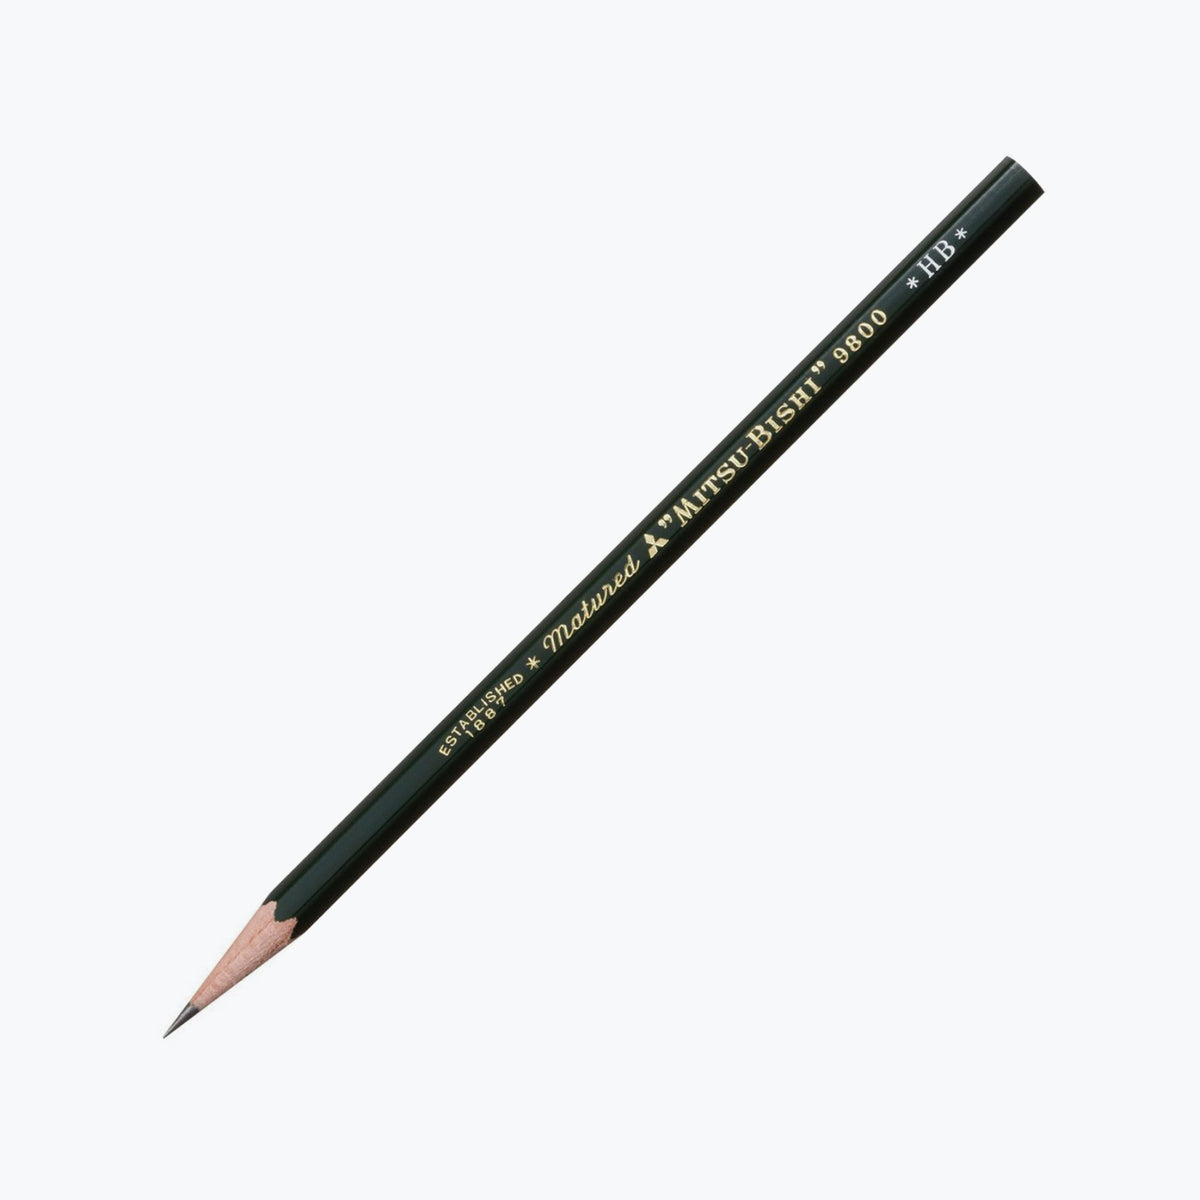 Mitsubishi - Pencil - 9800 (Various Grades) - Box of 12